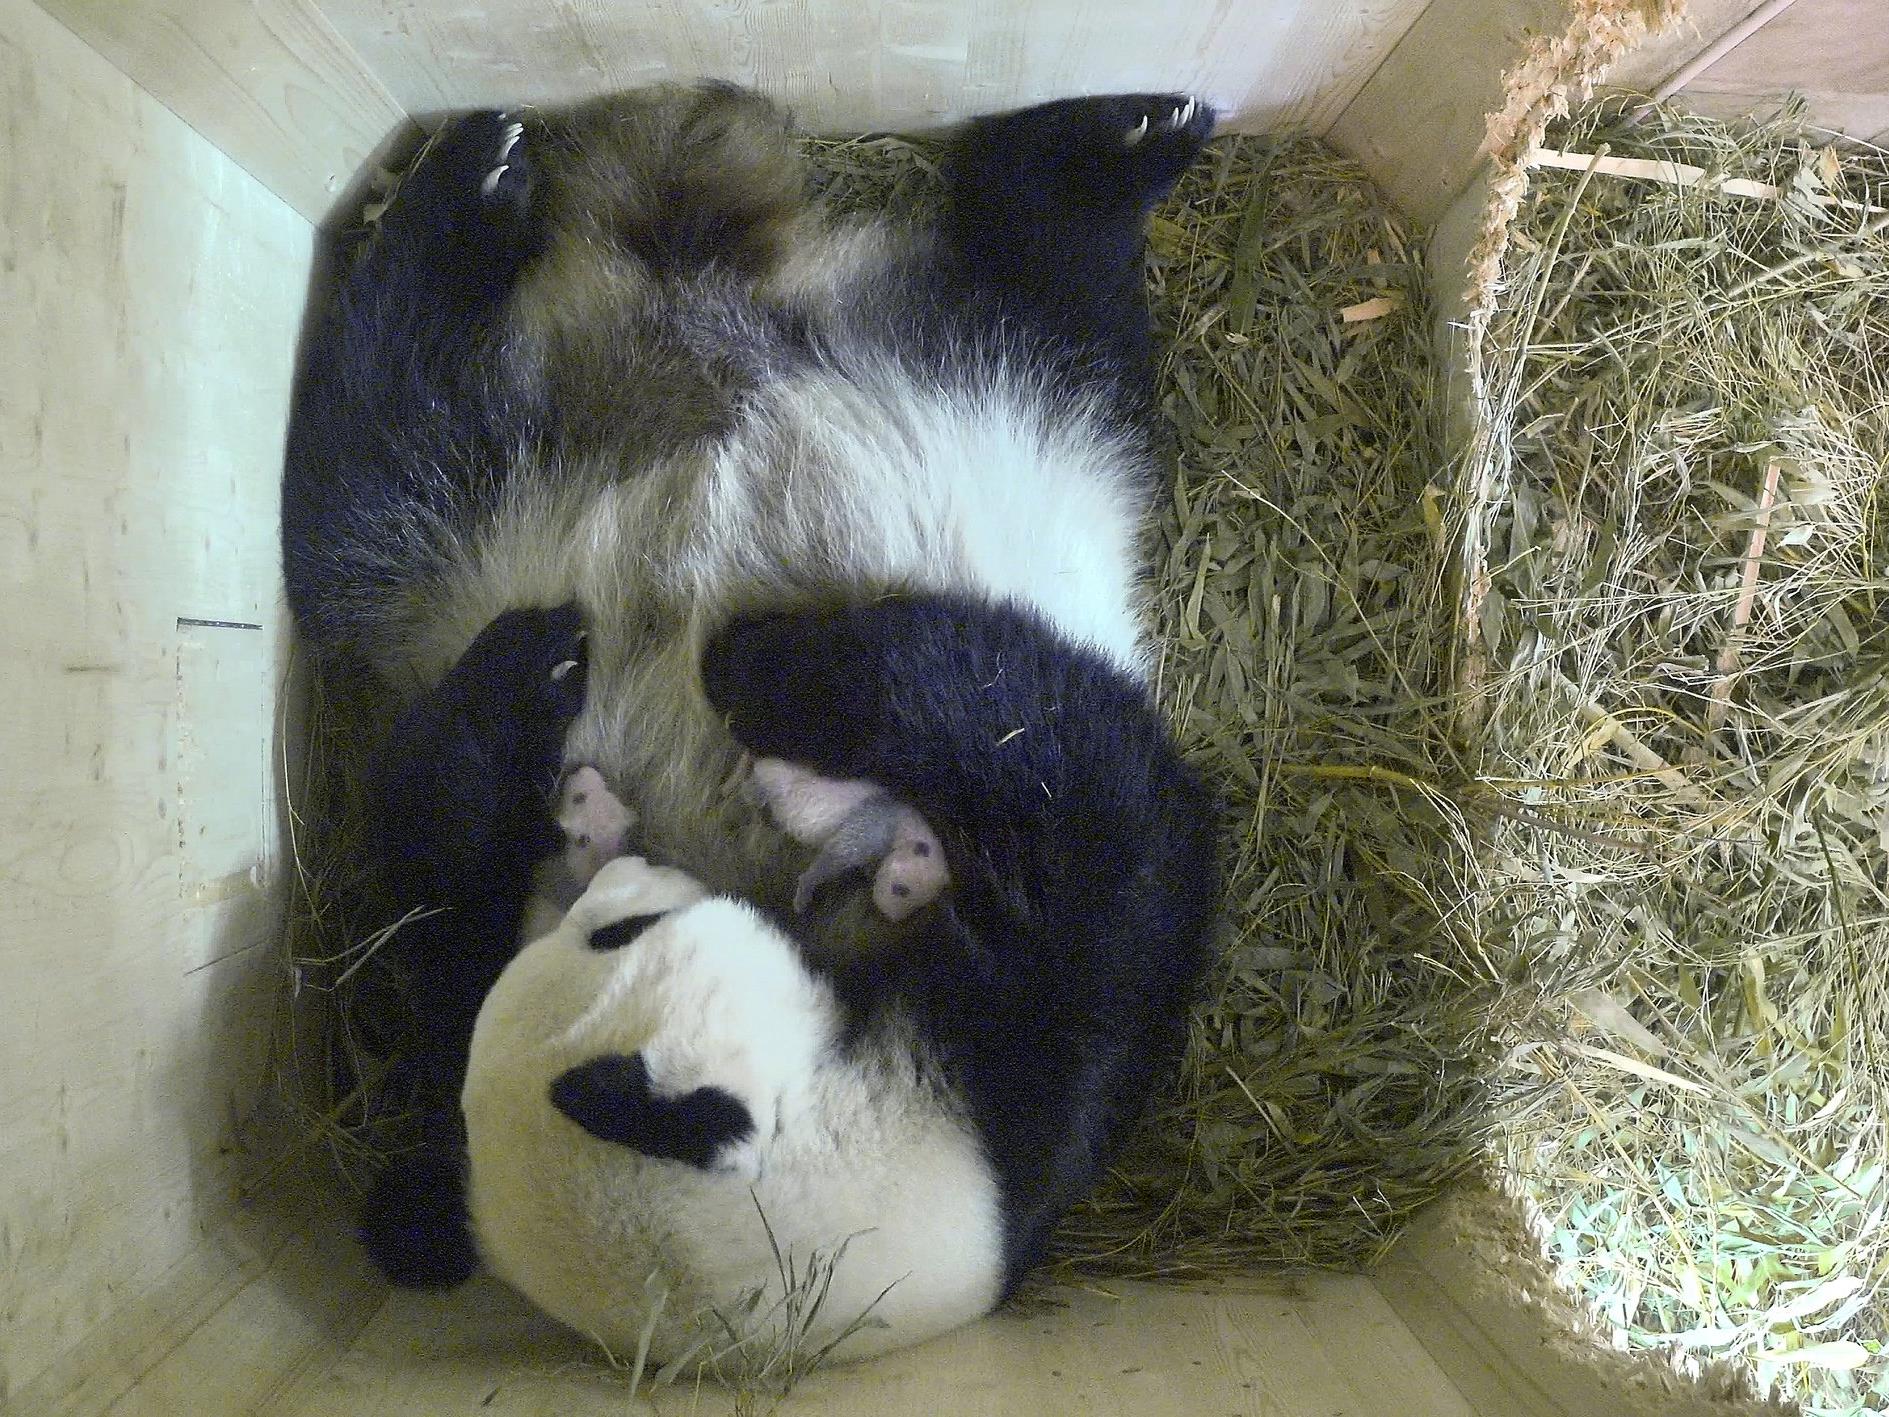 Die kleinen Pandababys im Tiergarten Schönbrunn bekommen bereits Fell.